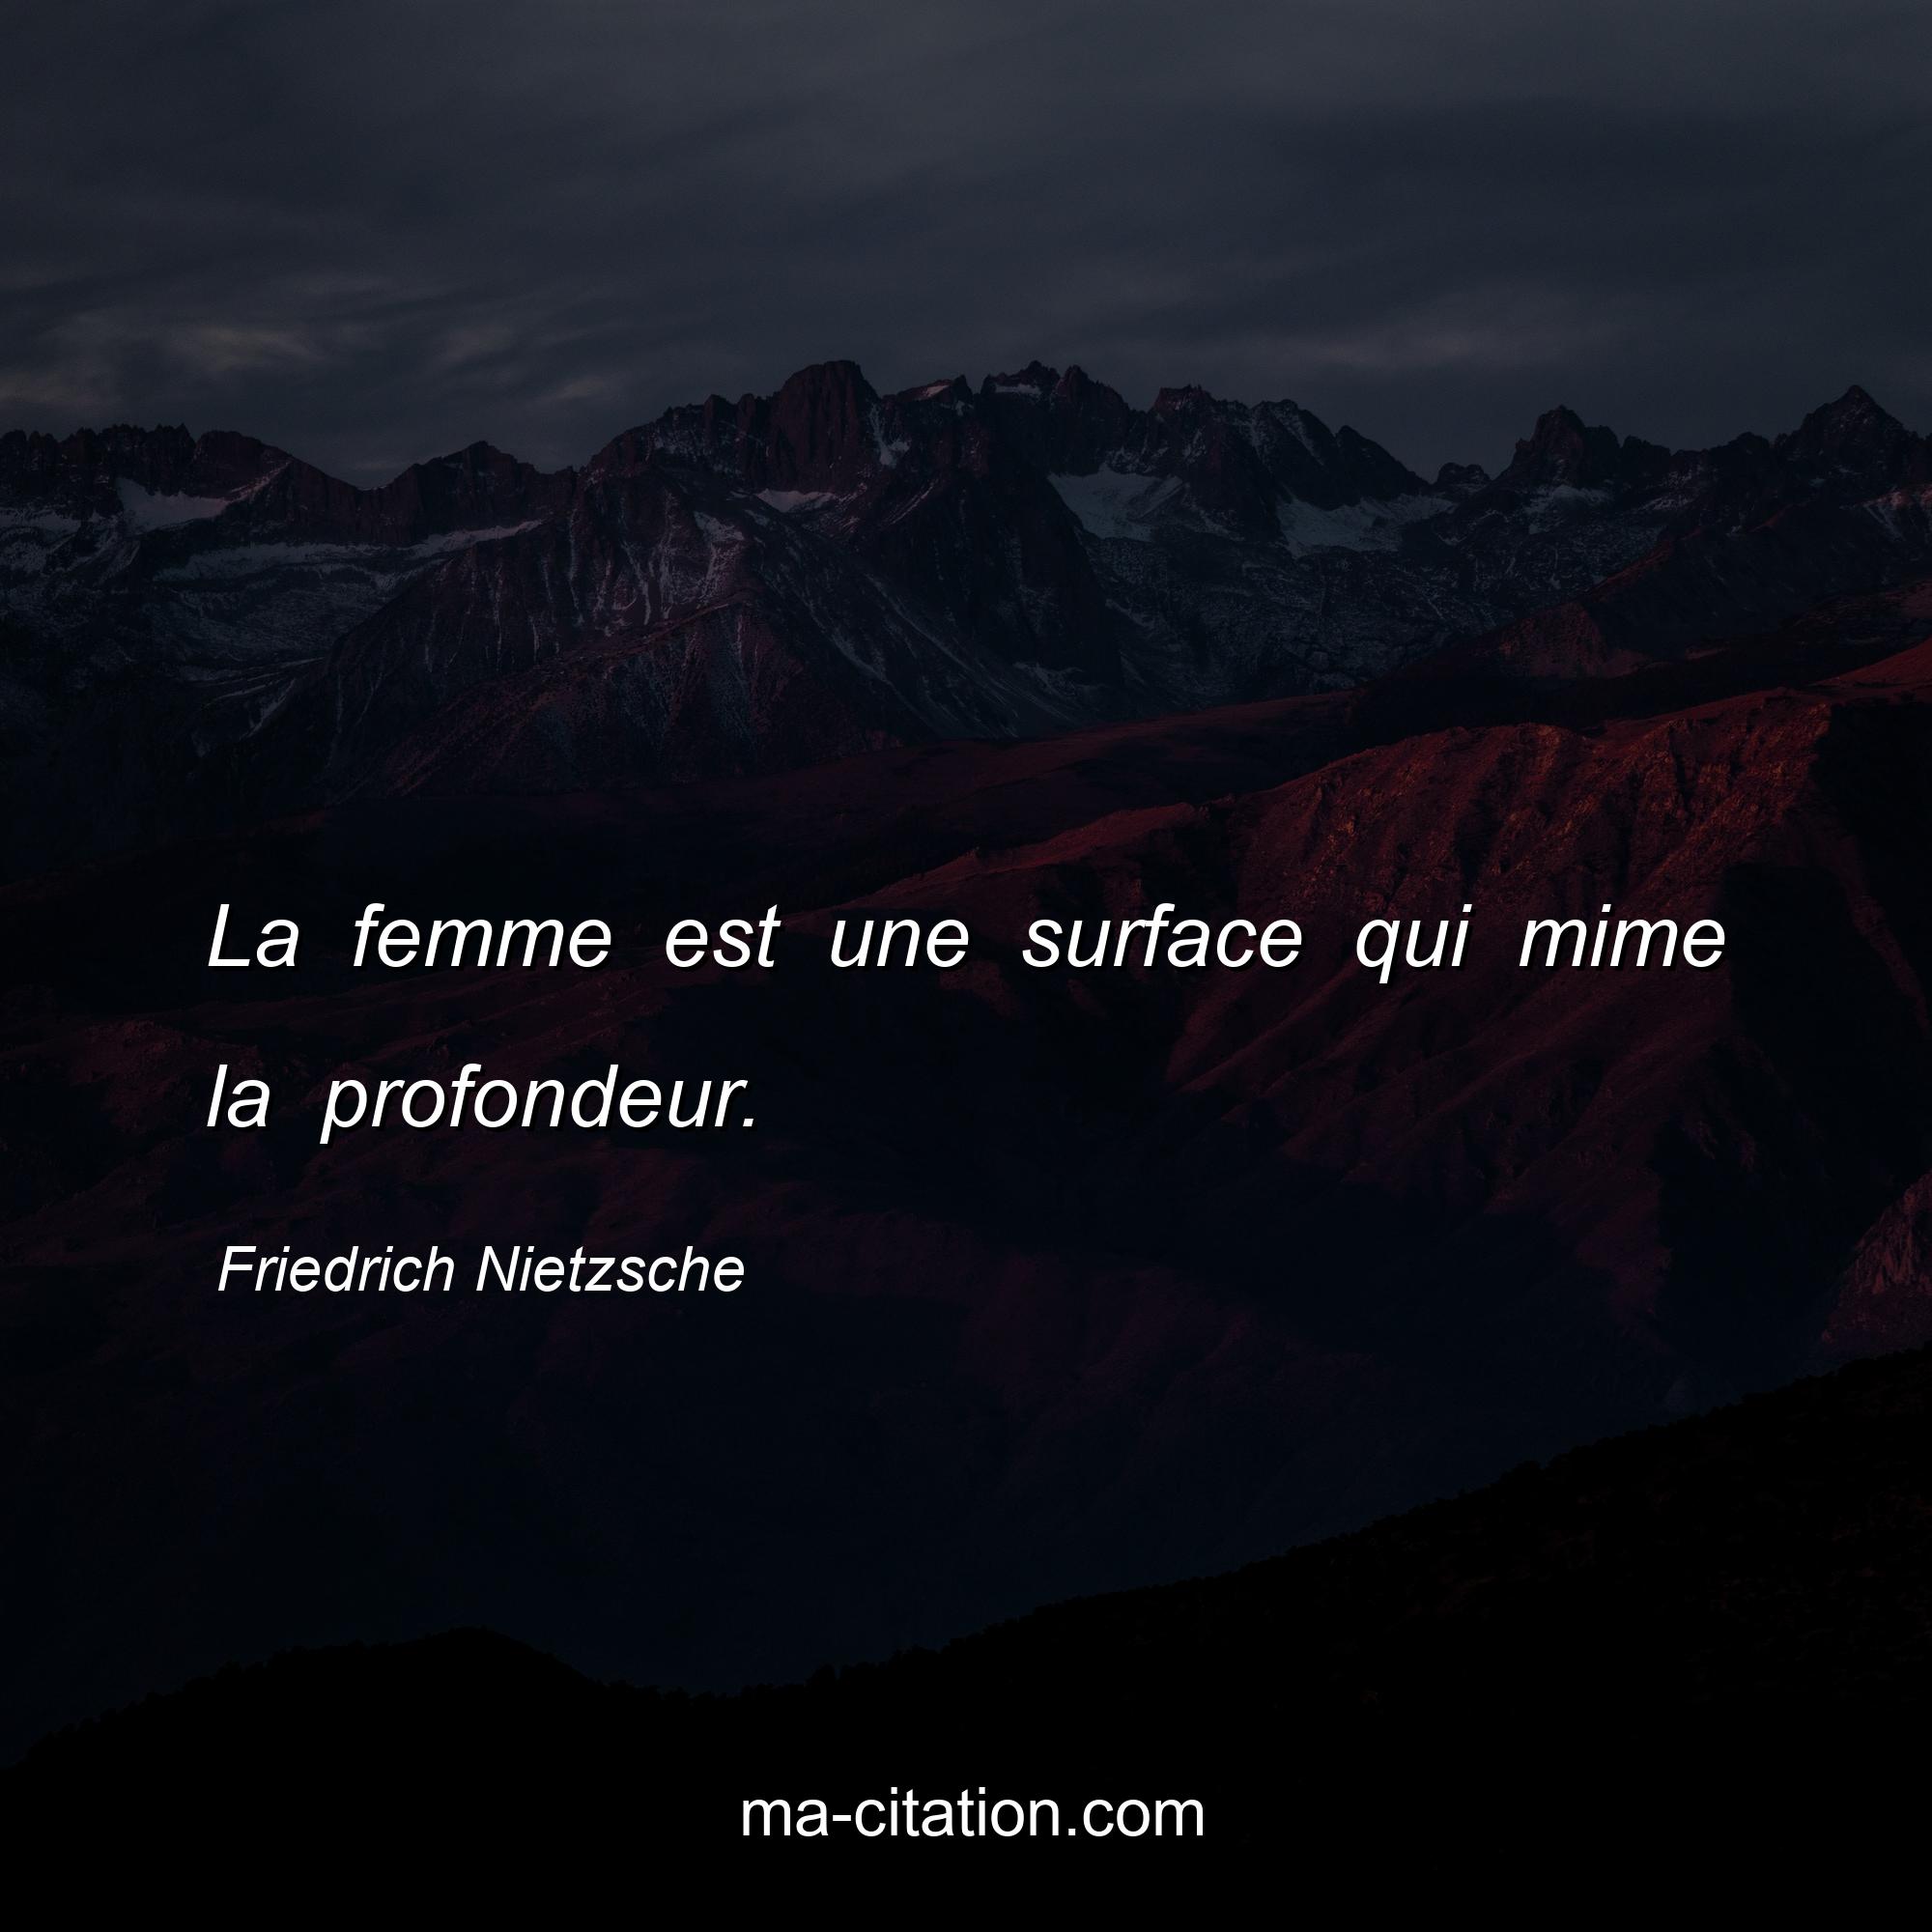 Friedrich Nietzsche : La femme est une surface qui mime la profondeur.